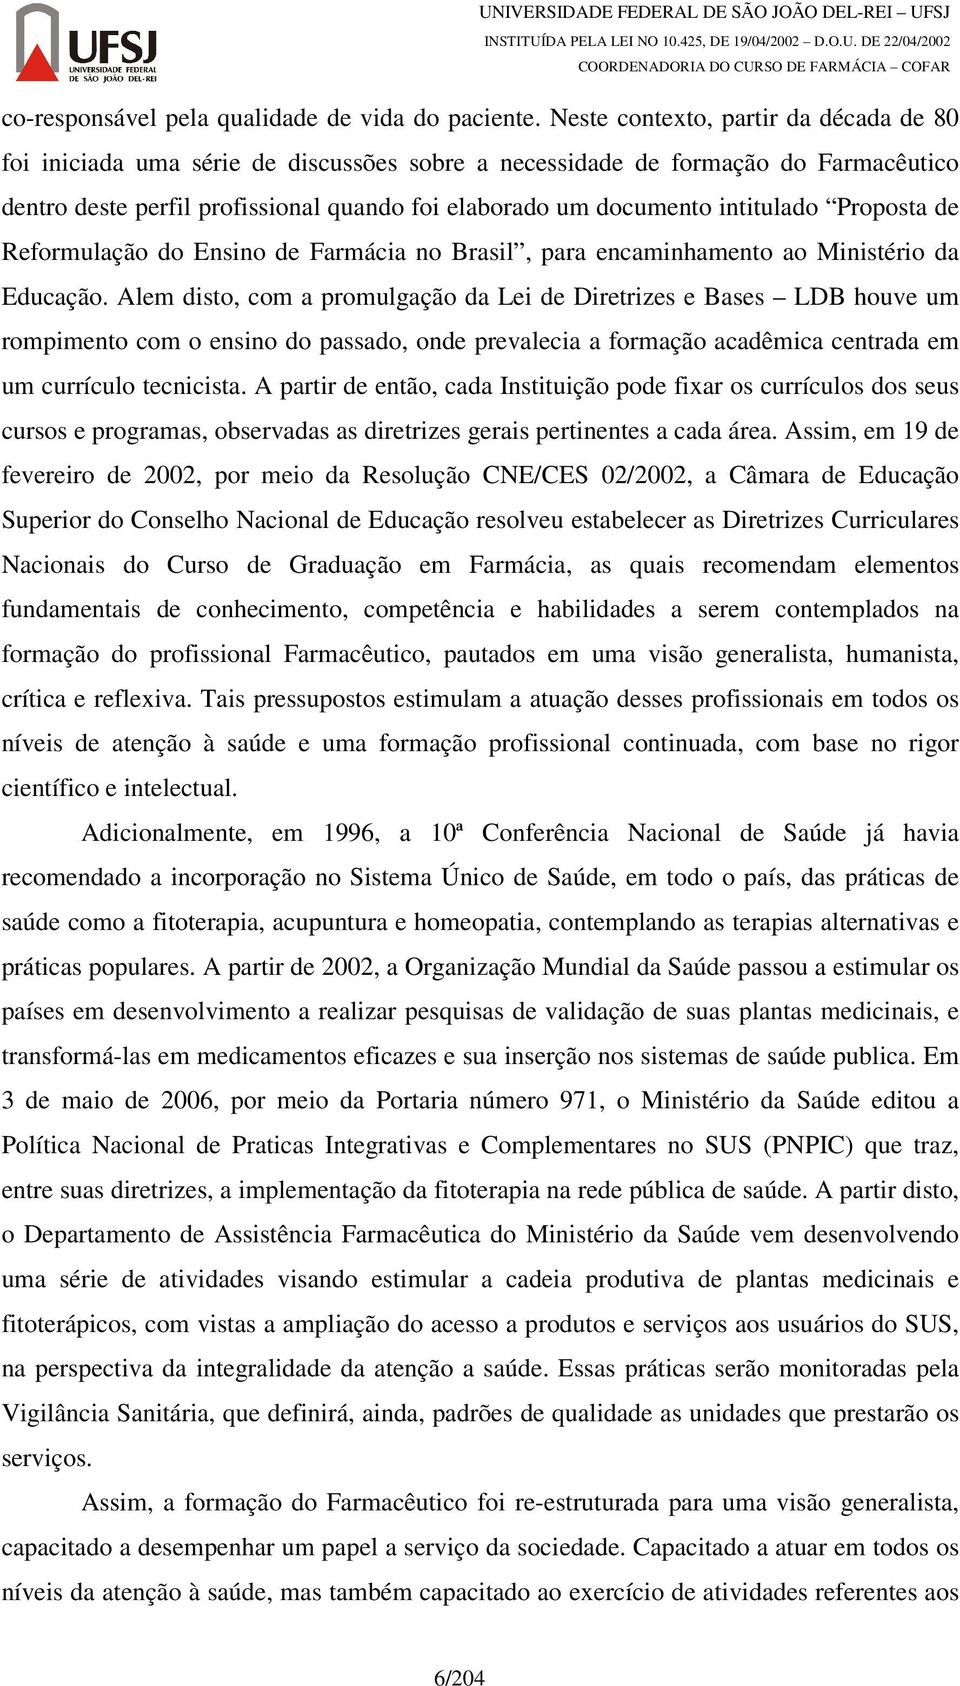 intitulado Proposta de Reformulação do Ensino de Farmácia no Brasil, para encaminhamento ao Ministério da Educação.